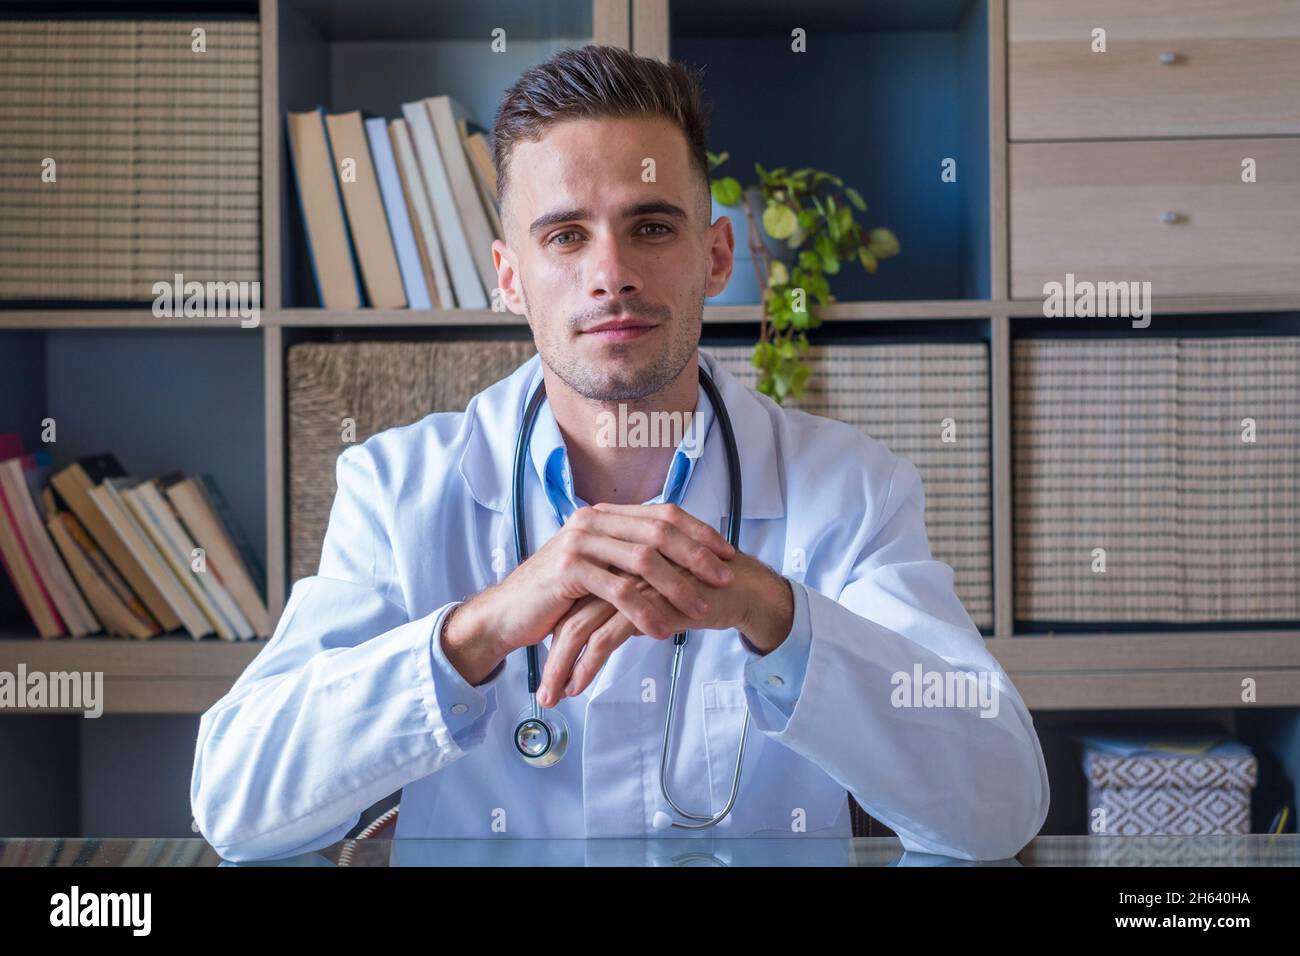 Headshot Porträt eines lächelnden jungen männlichen hausarztes oder Arztes in weißer medizinischer Uniform und Brille Blick auf Kamera posiert im Krankenhaus, glücklich kaukasischen Mann Arzt zeigen Selbstvertrauen Fähigkeiten in Klinik Arbeitsplatz Stockfoto